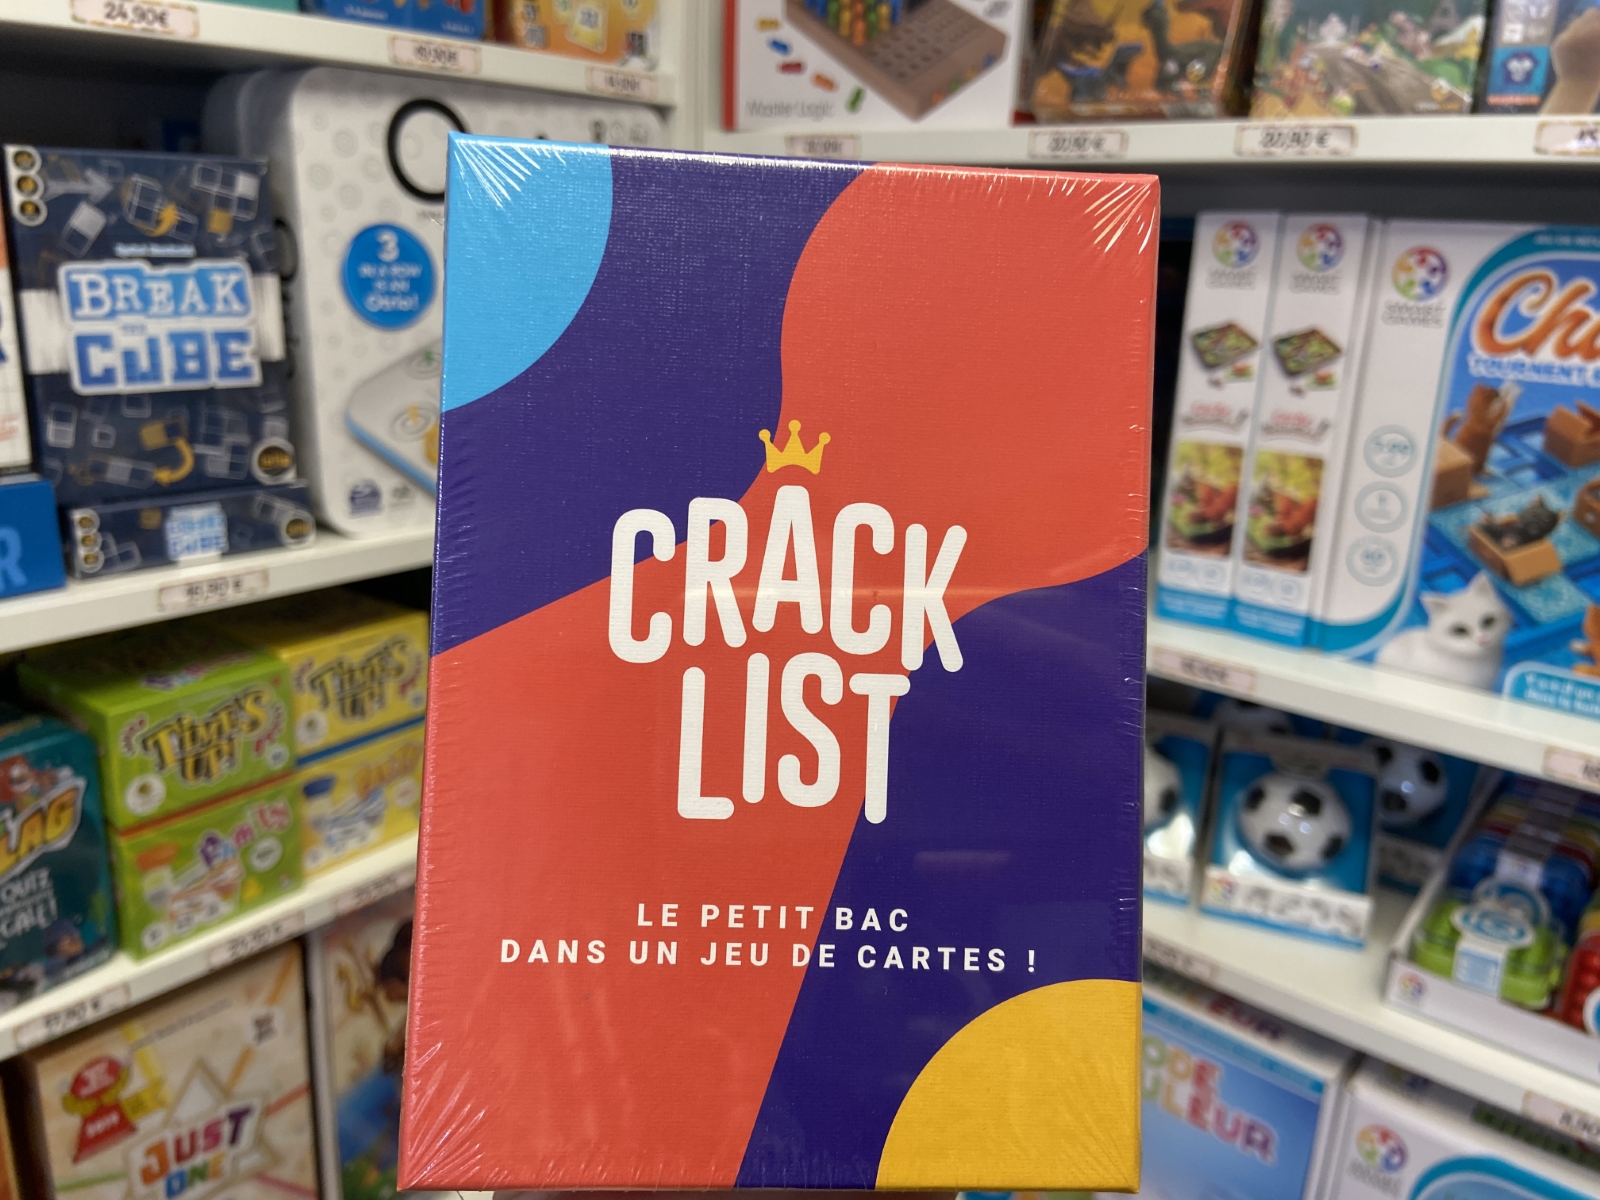 Crack List: jeu de société